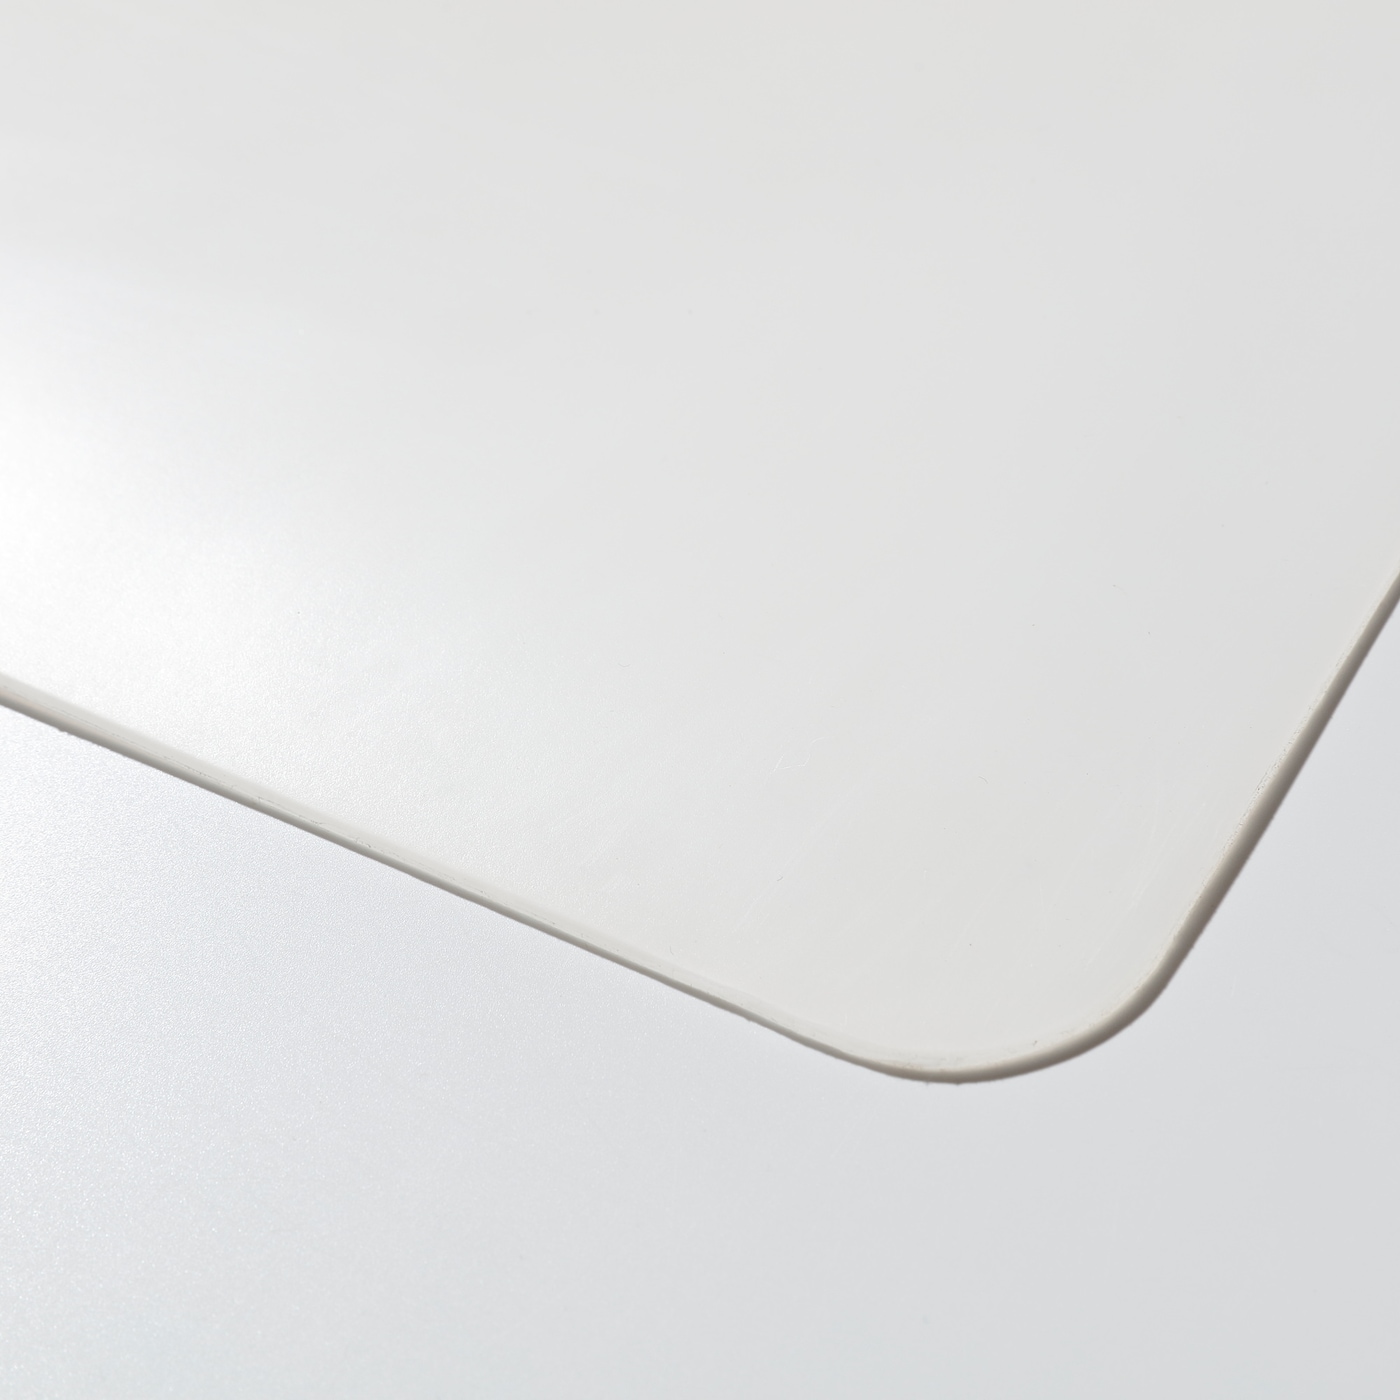 СКВАЛЛЬРА подкладка на стол, белый/прозрачный60x80 см